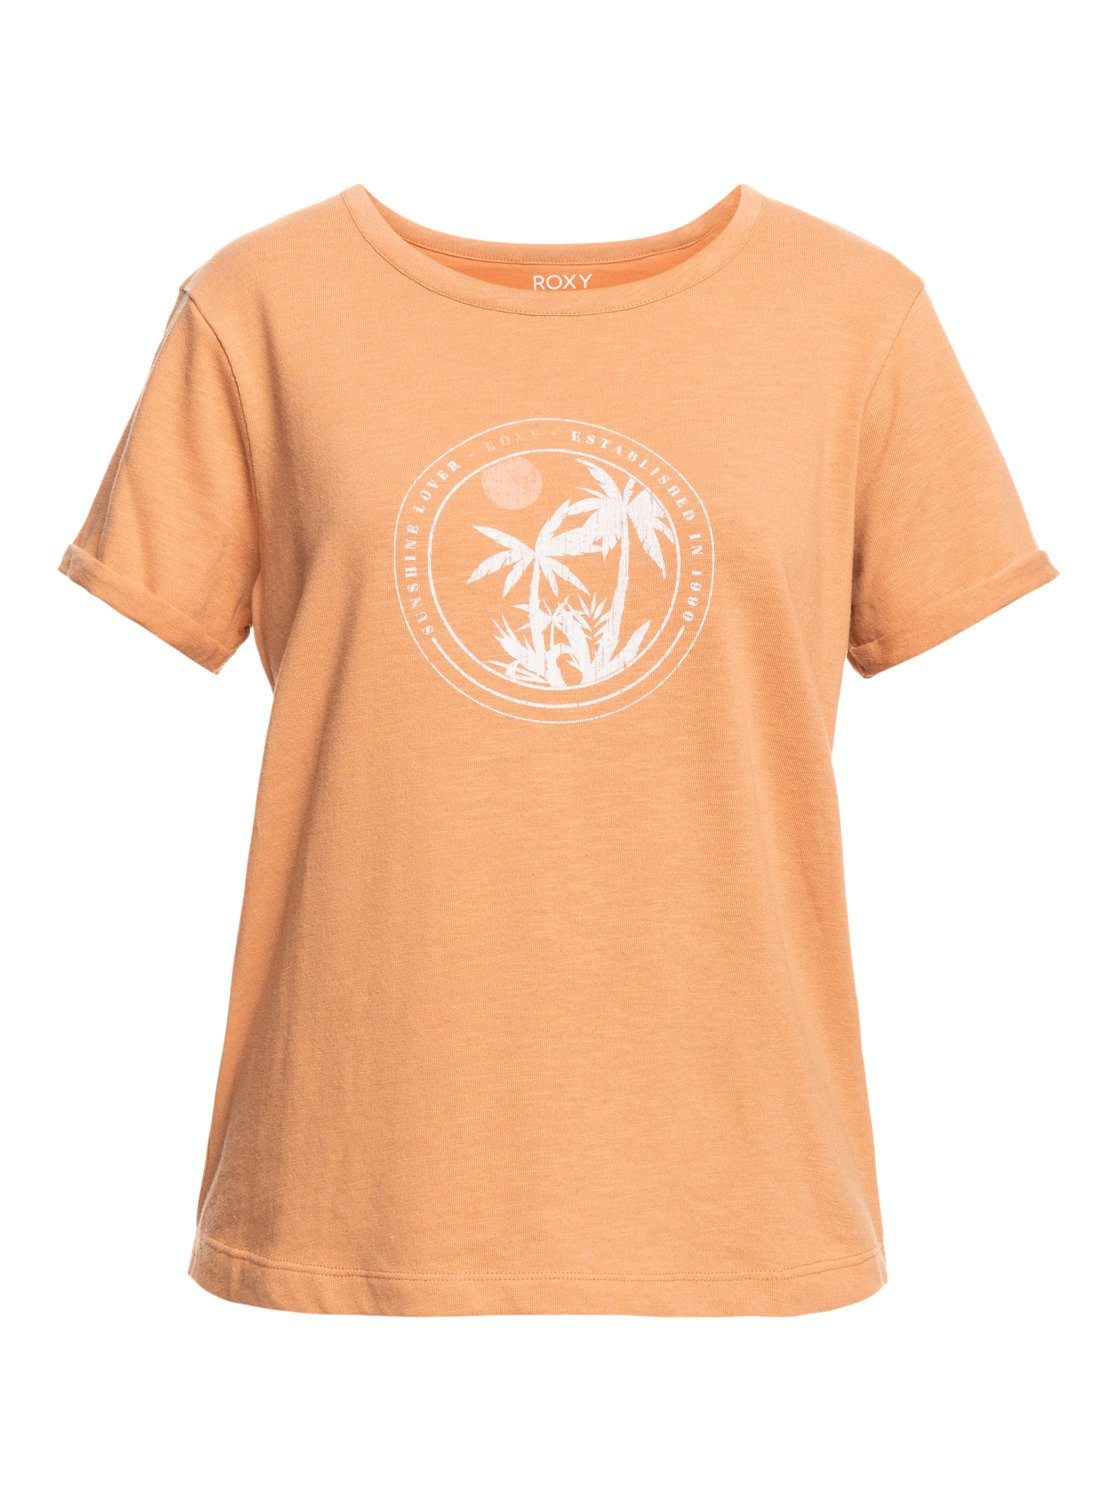 Moreel adopteren Fervent Roxy T-shirt Ocean After in de online winkel | OTTO